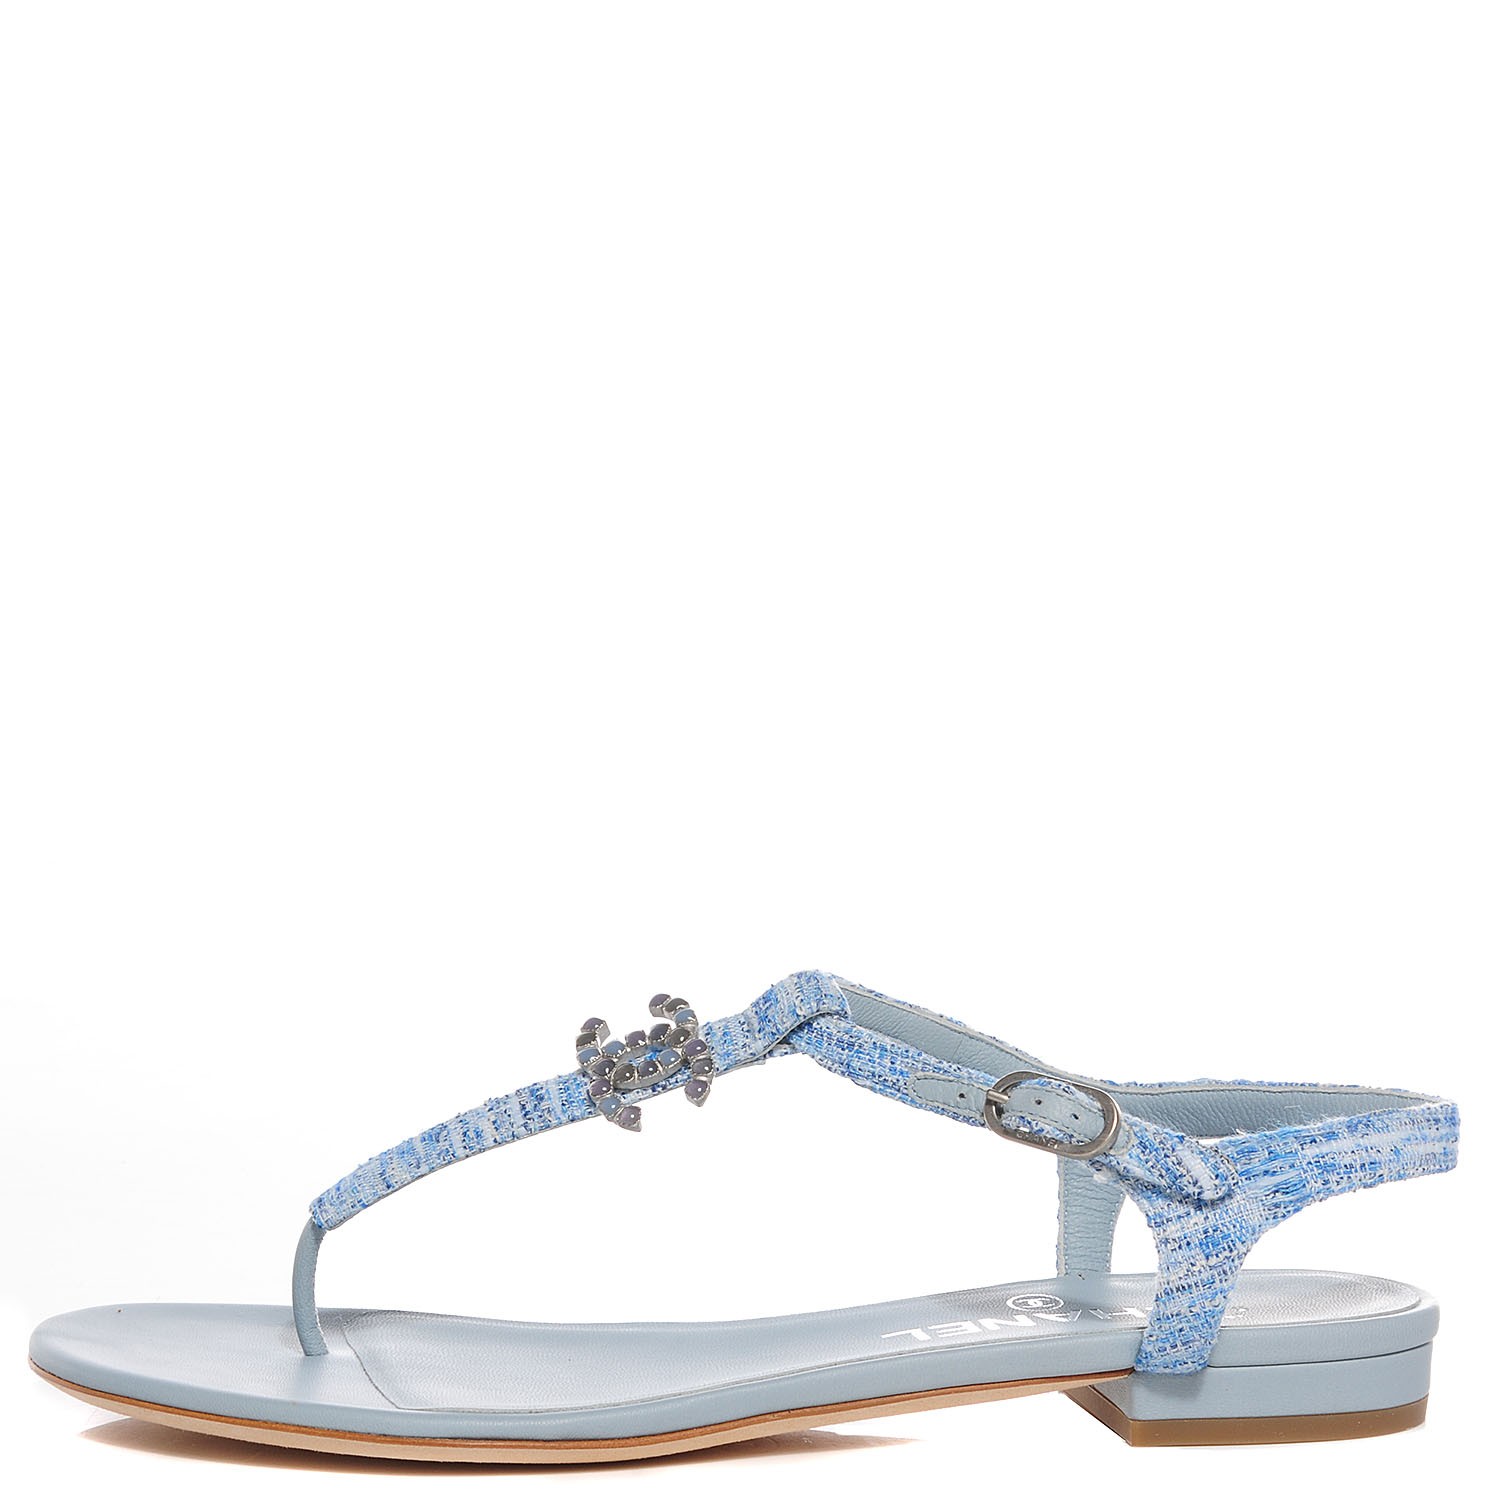 light blue sandals flat